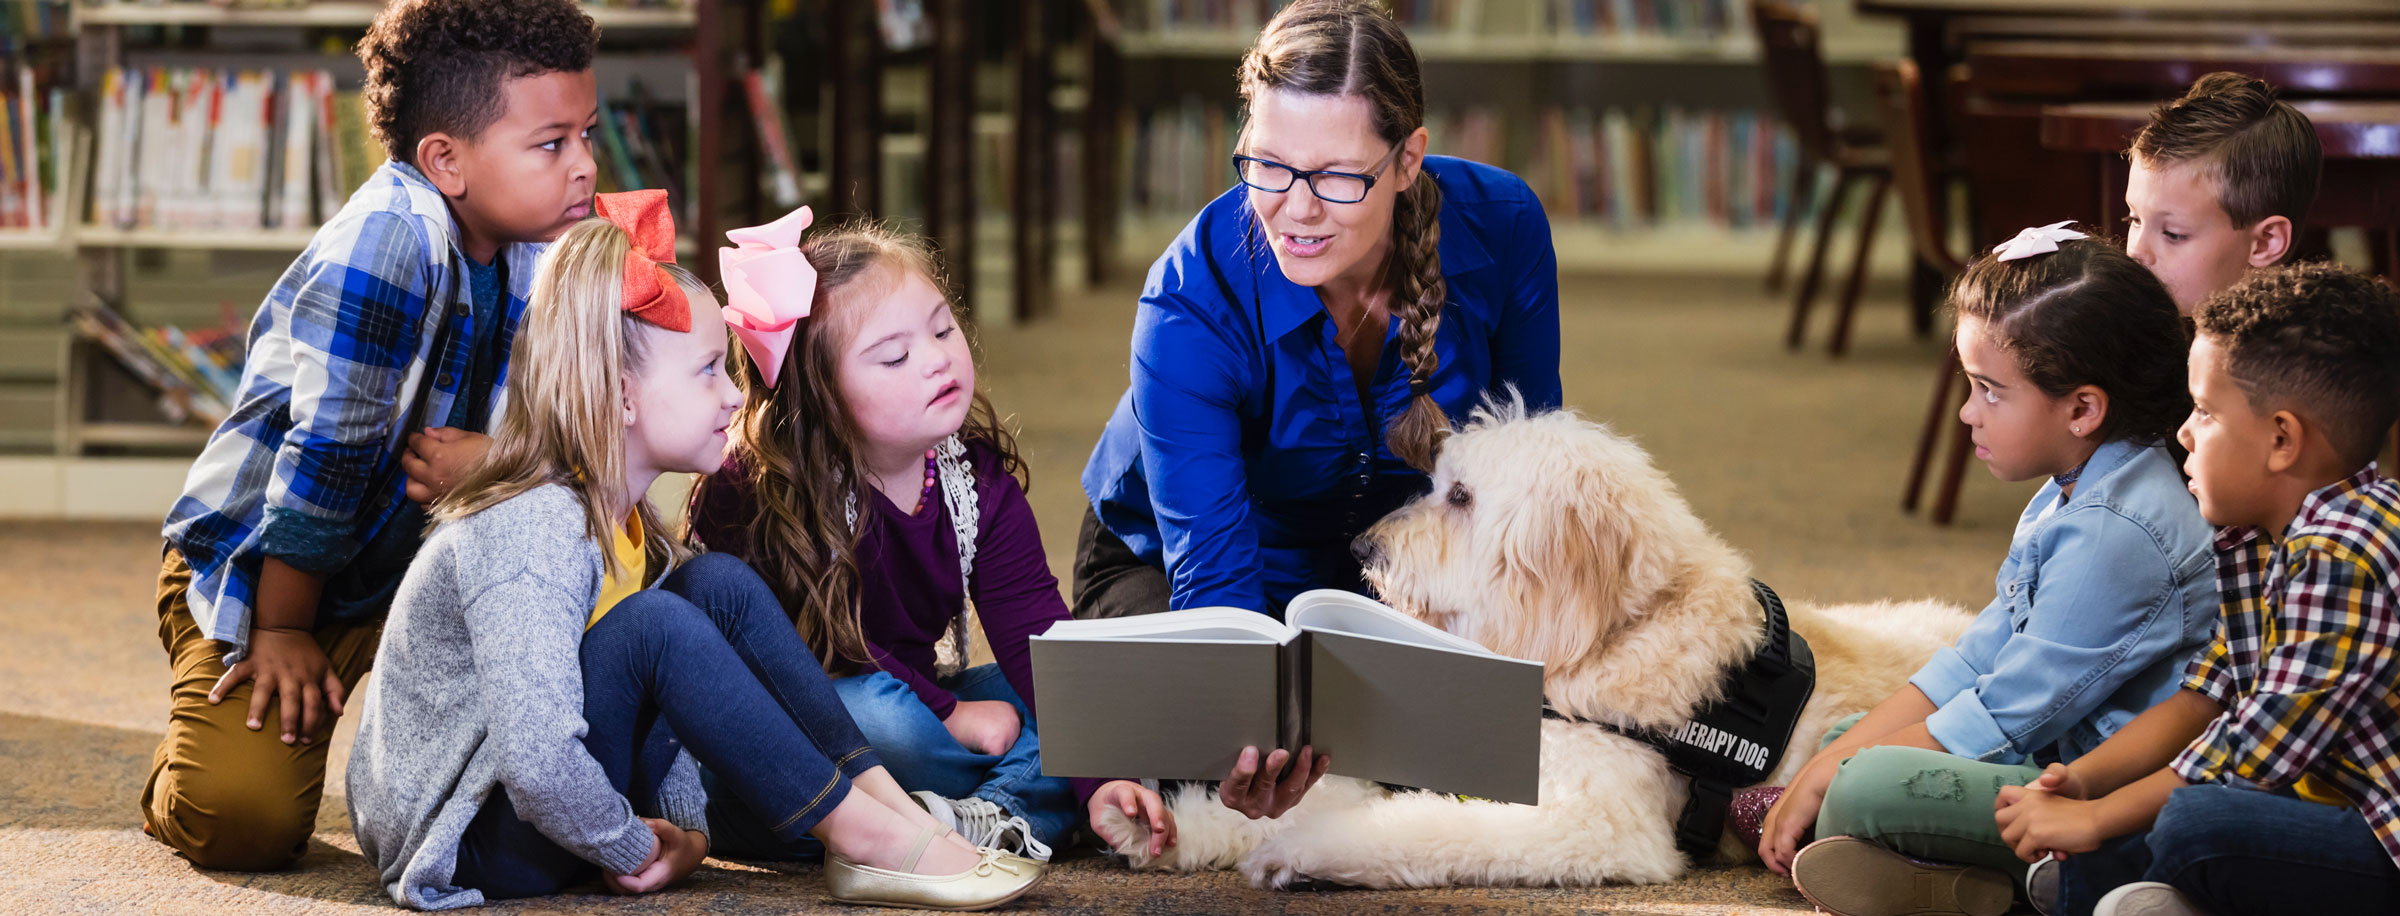 image de plusieurs enfants assis sur le sol avec un chien d'assistance pendant que l'enseignant lit un livre